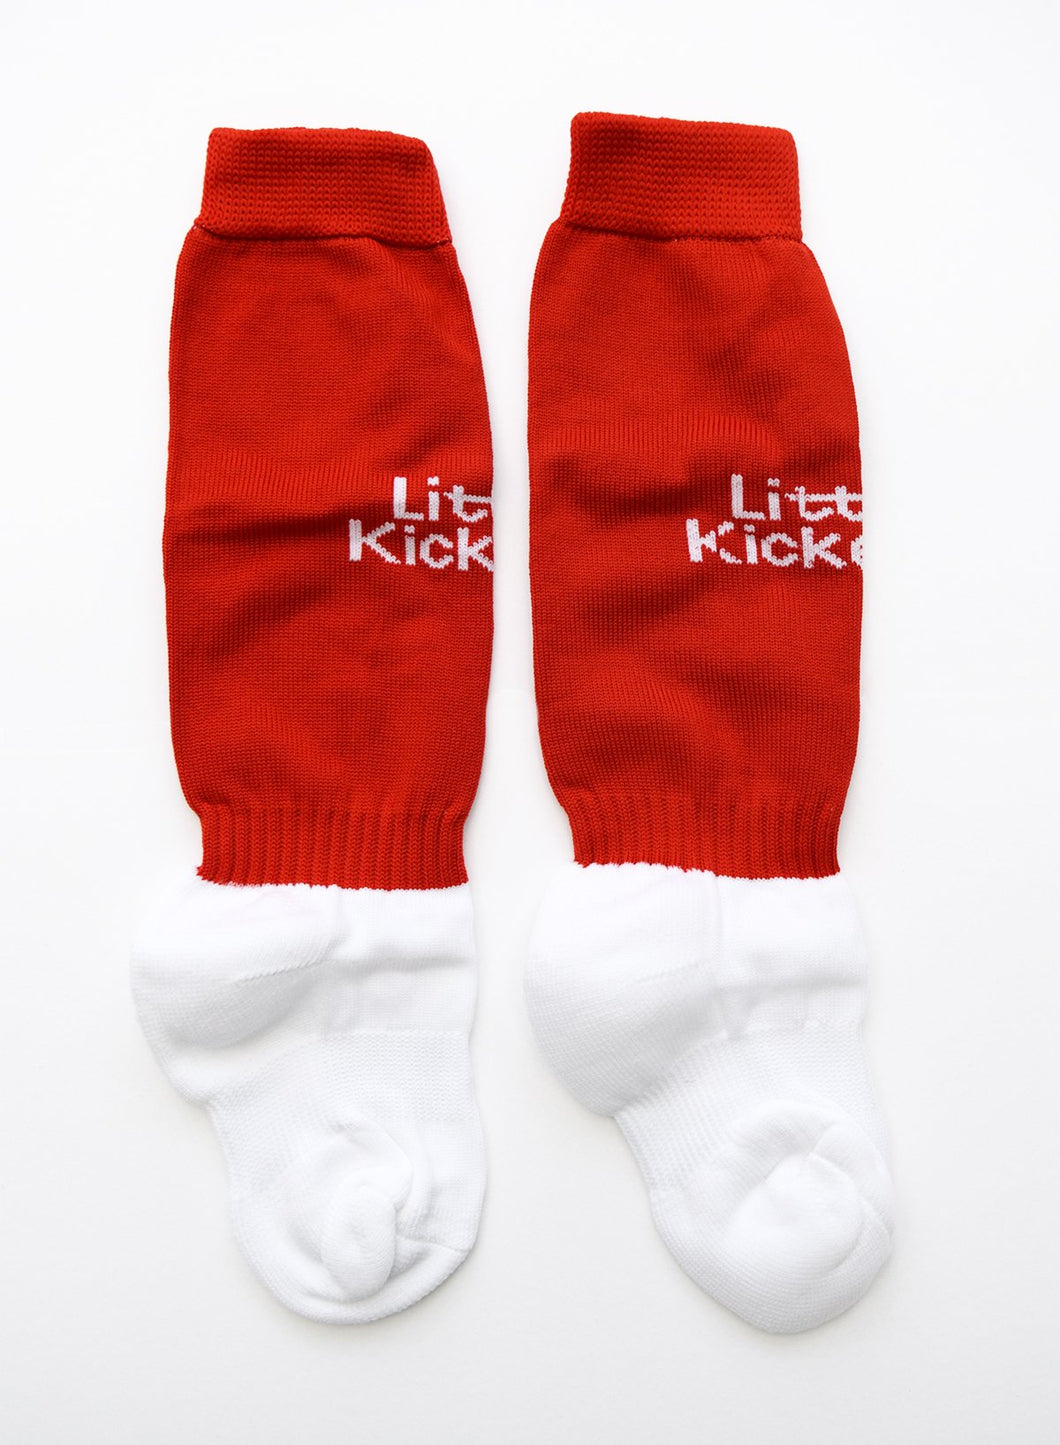 LKFC Socks Size M-L